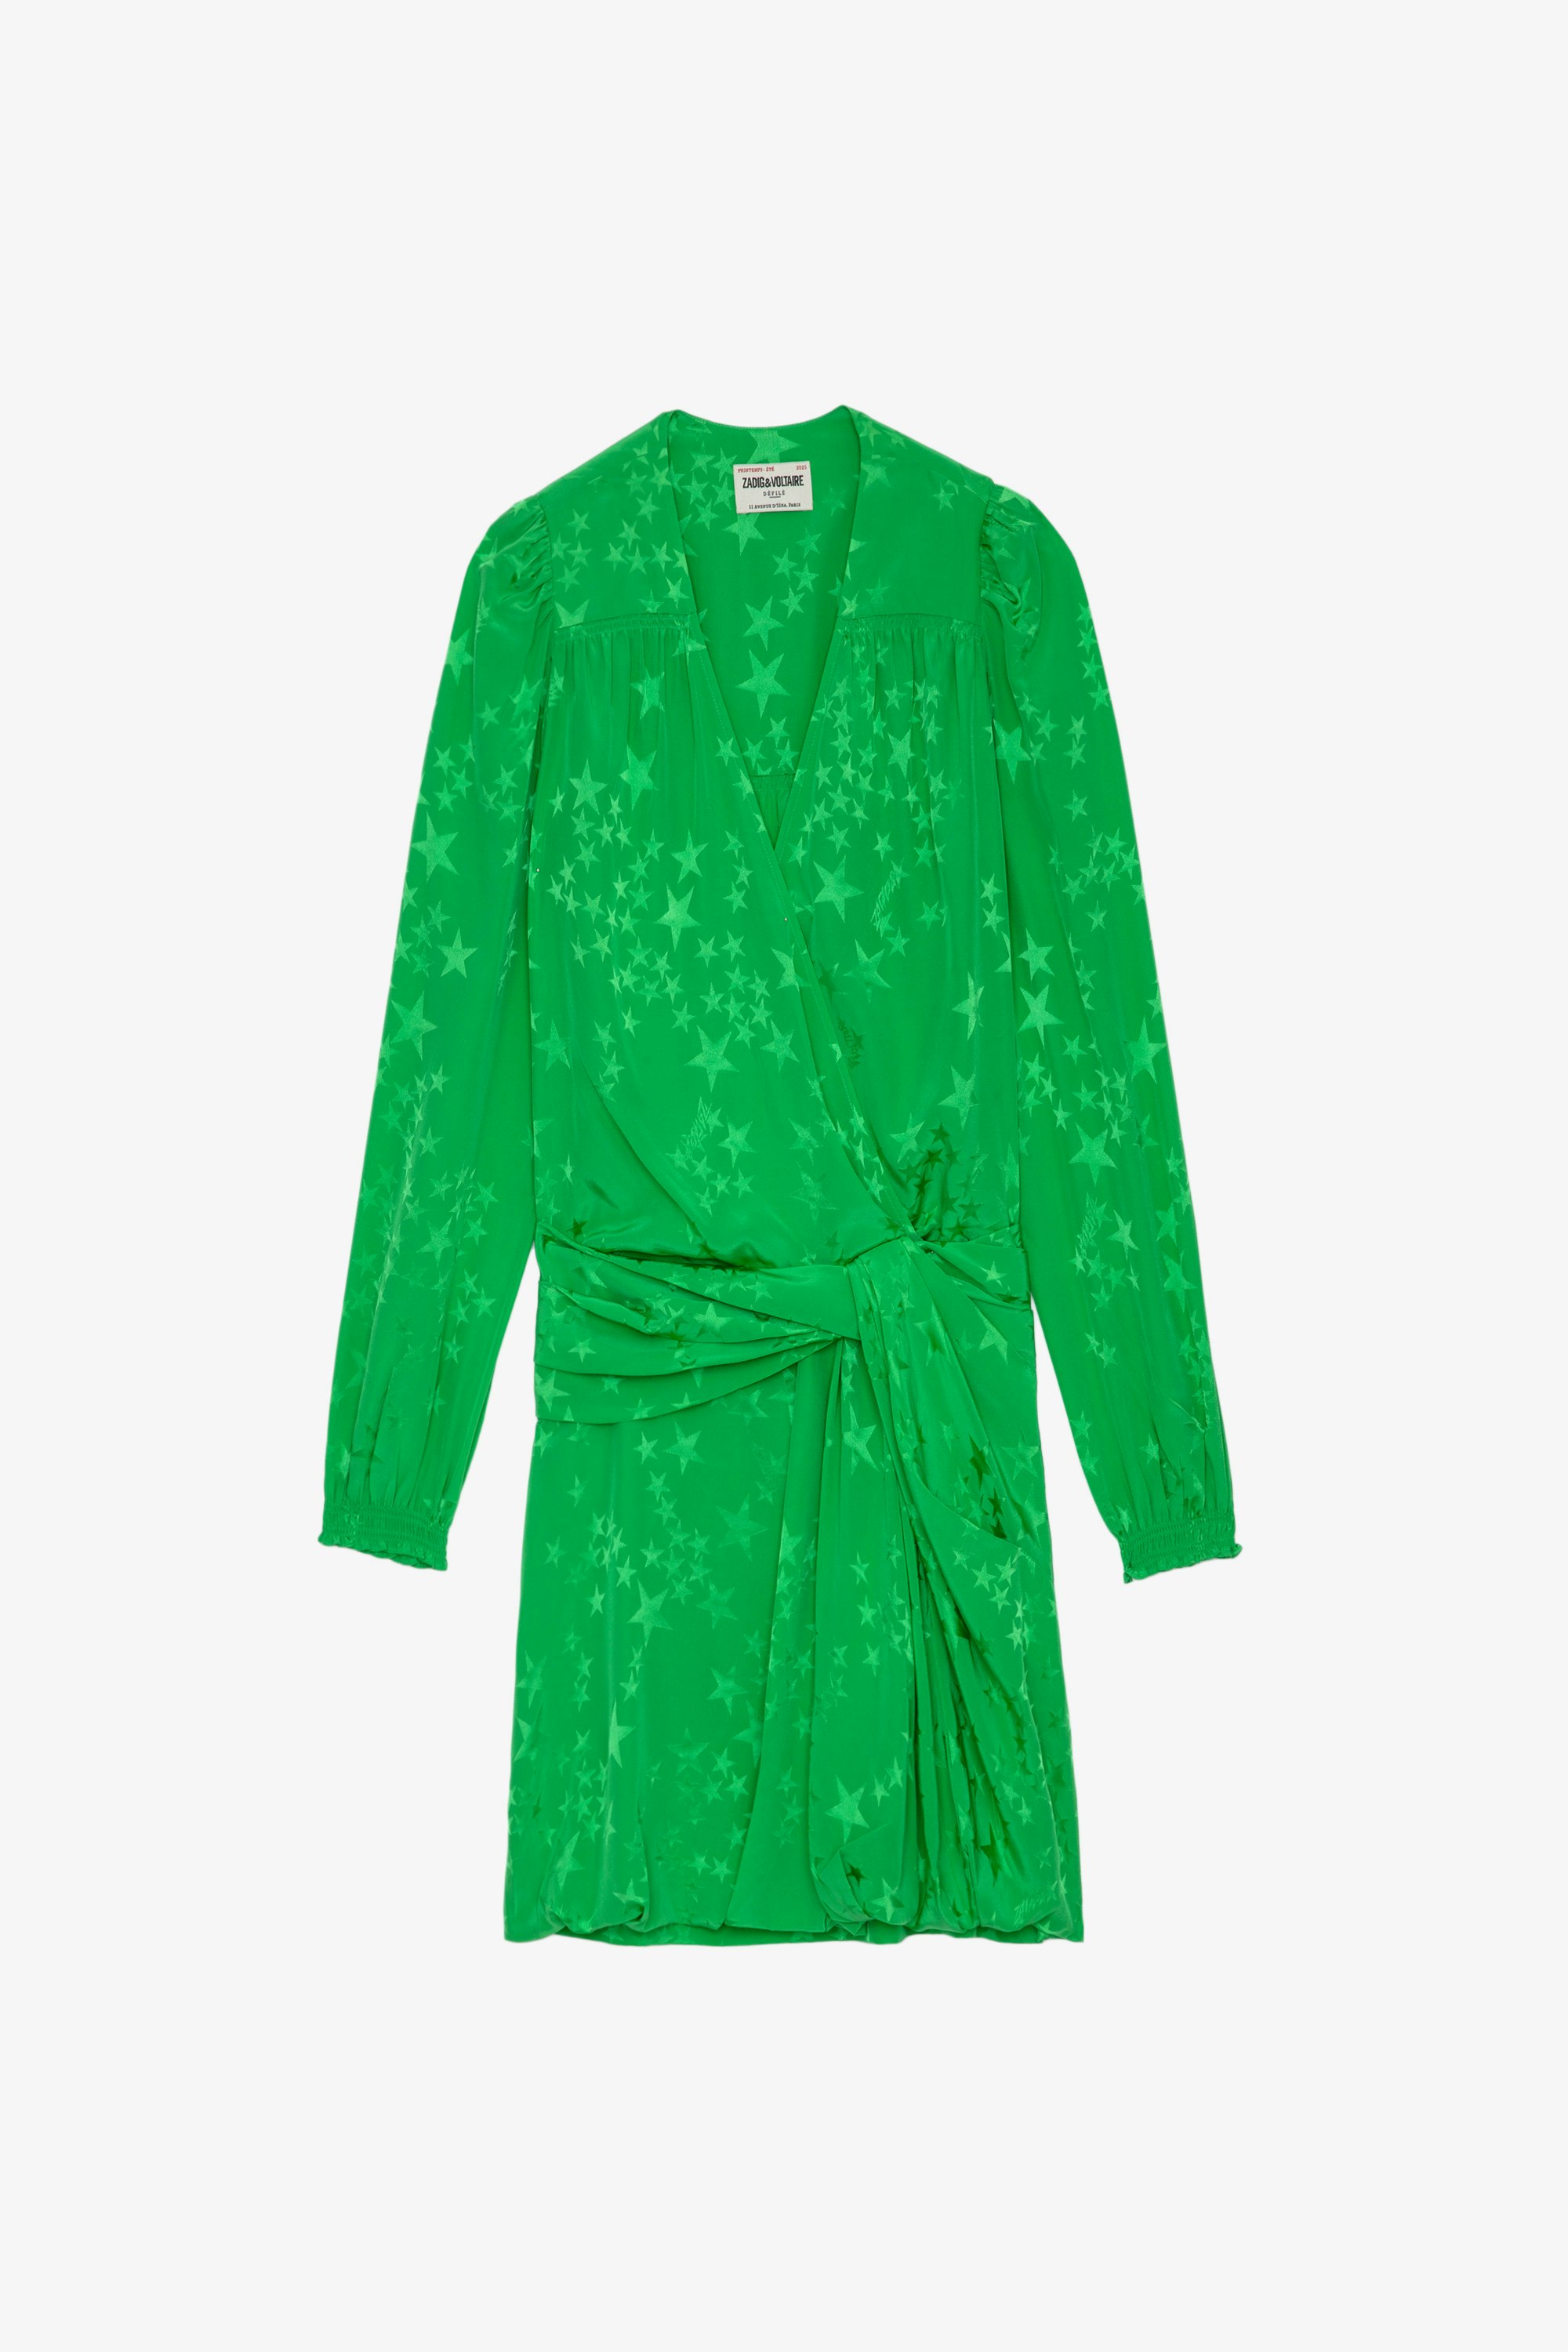 Seidenkleid Recol Jac Kurzes Damenkleid aus apfelgrüner Jacquardseide mit Drapé-Effekt, mit Sternen verziert und in der Taille gebunden